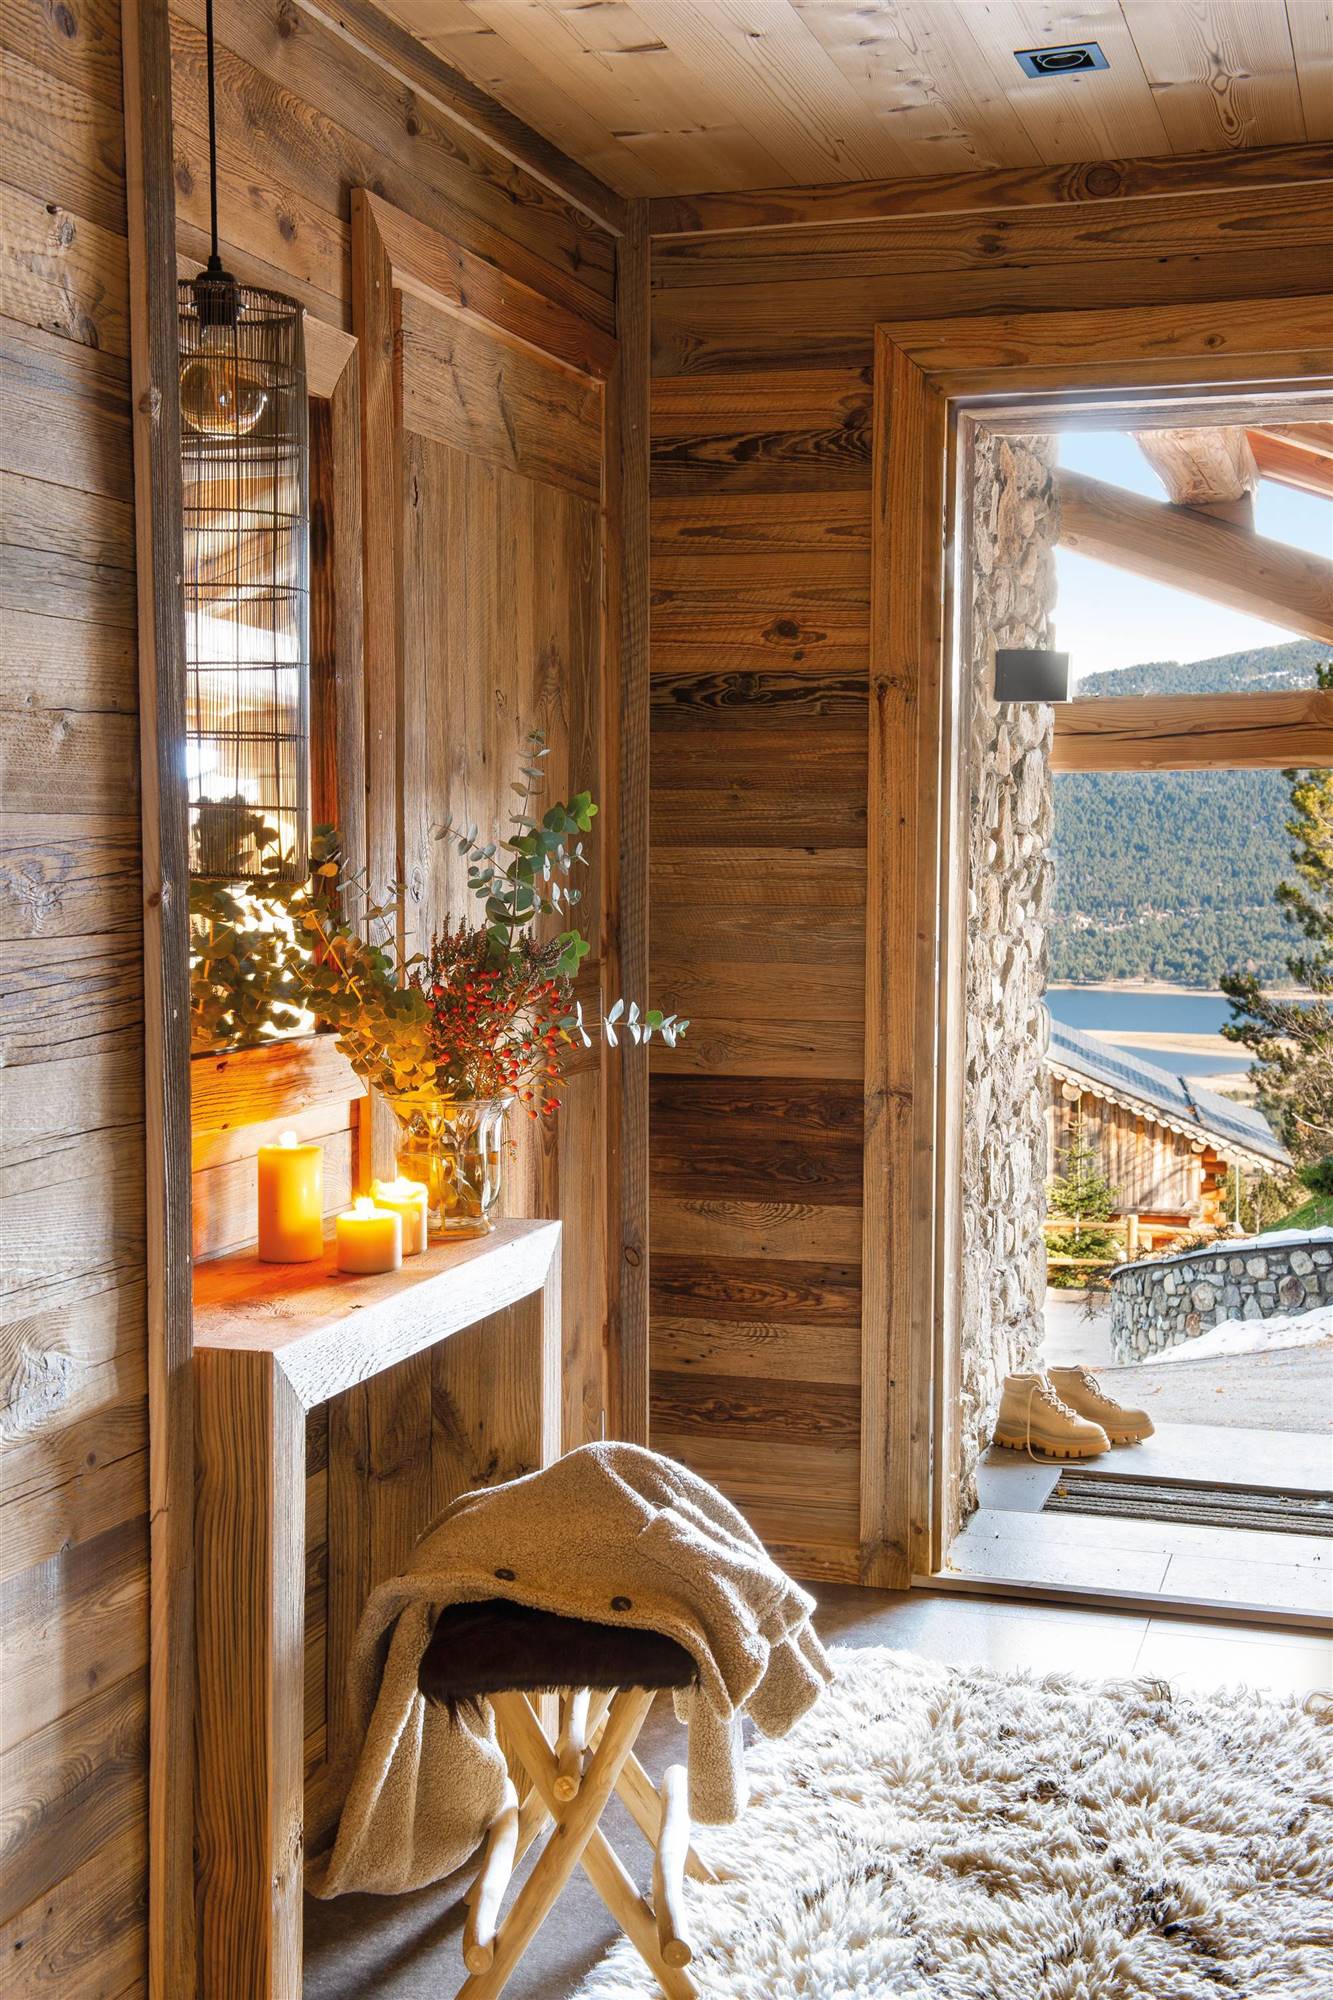 Un recibidor rústico de madera decorado para invierno.